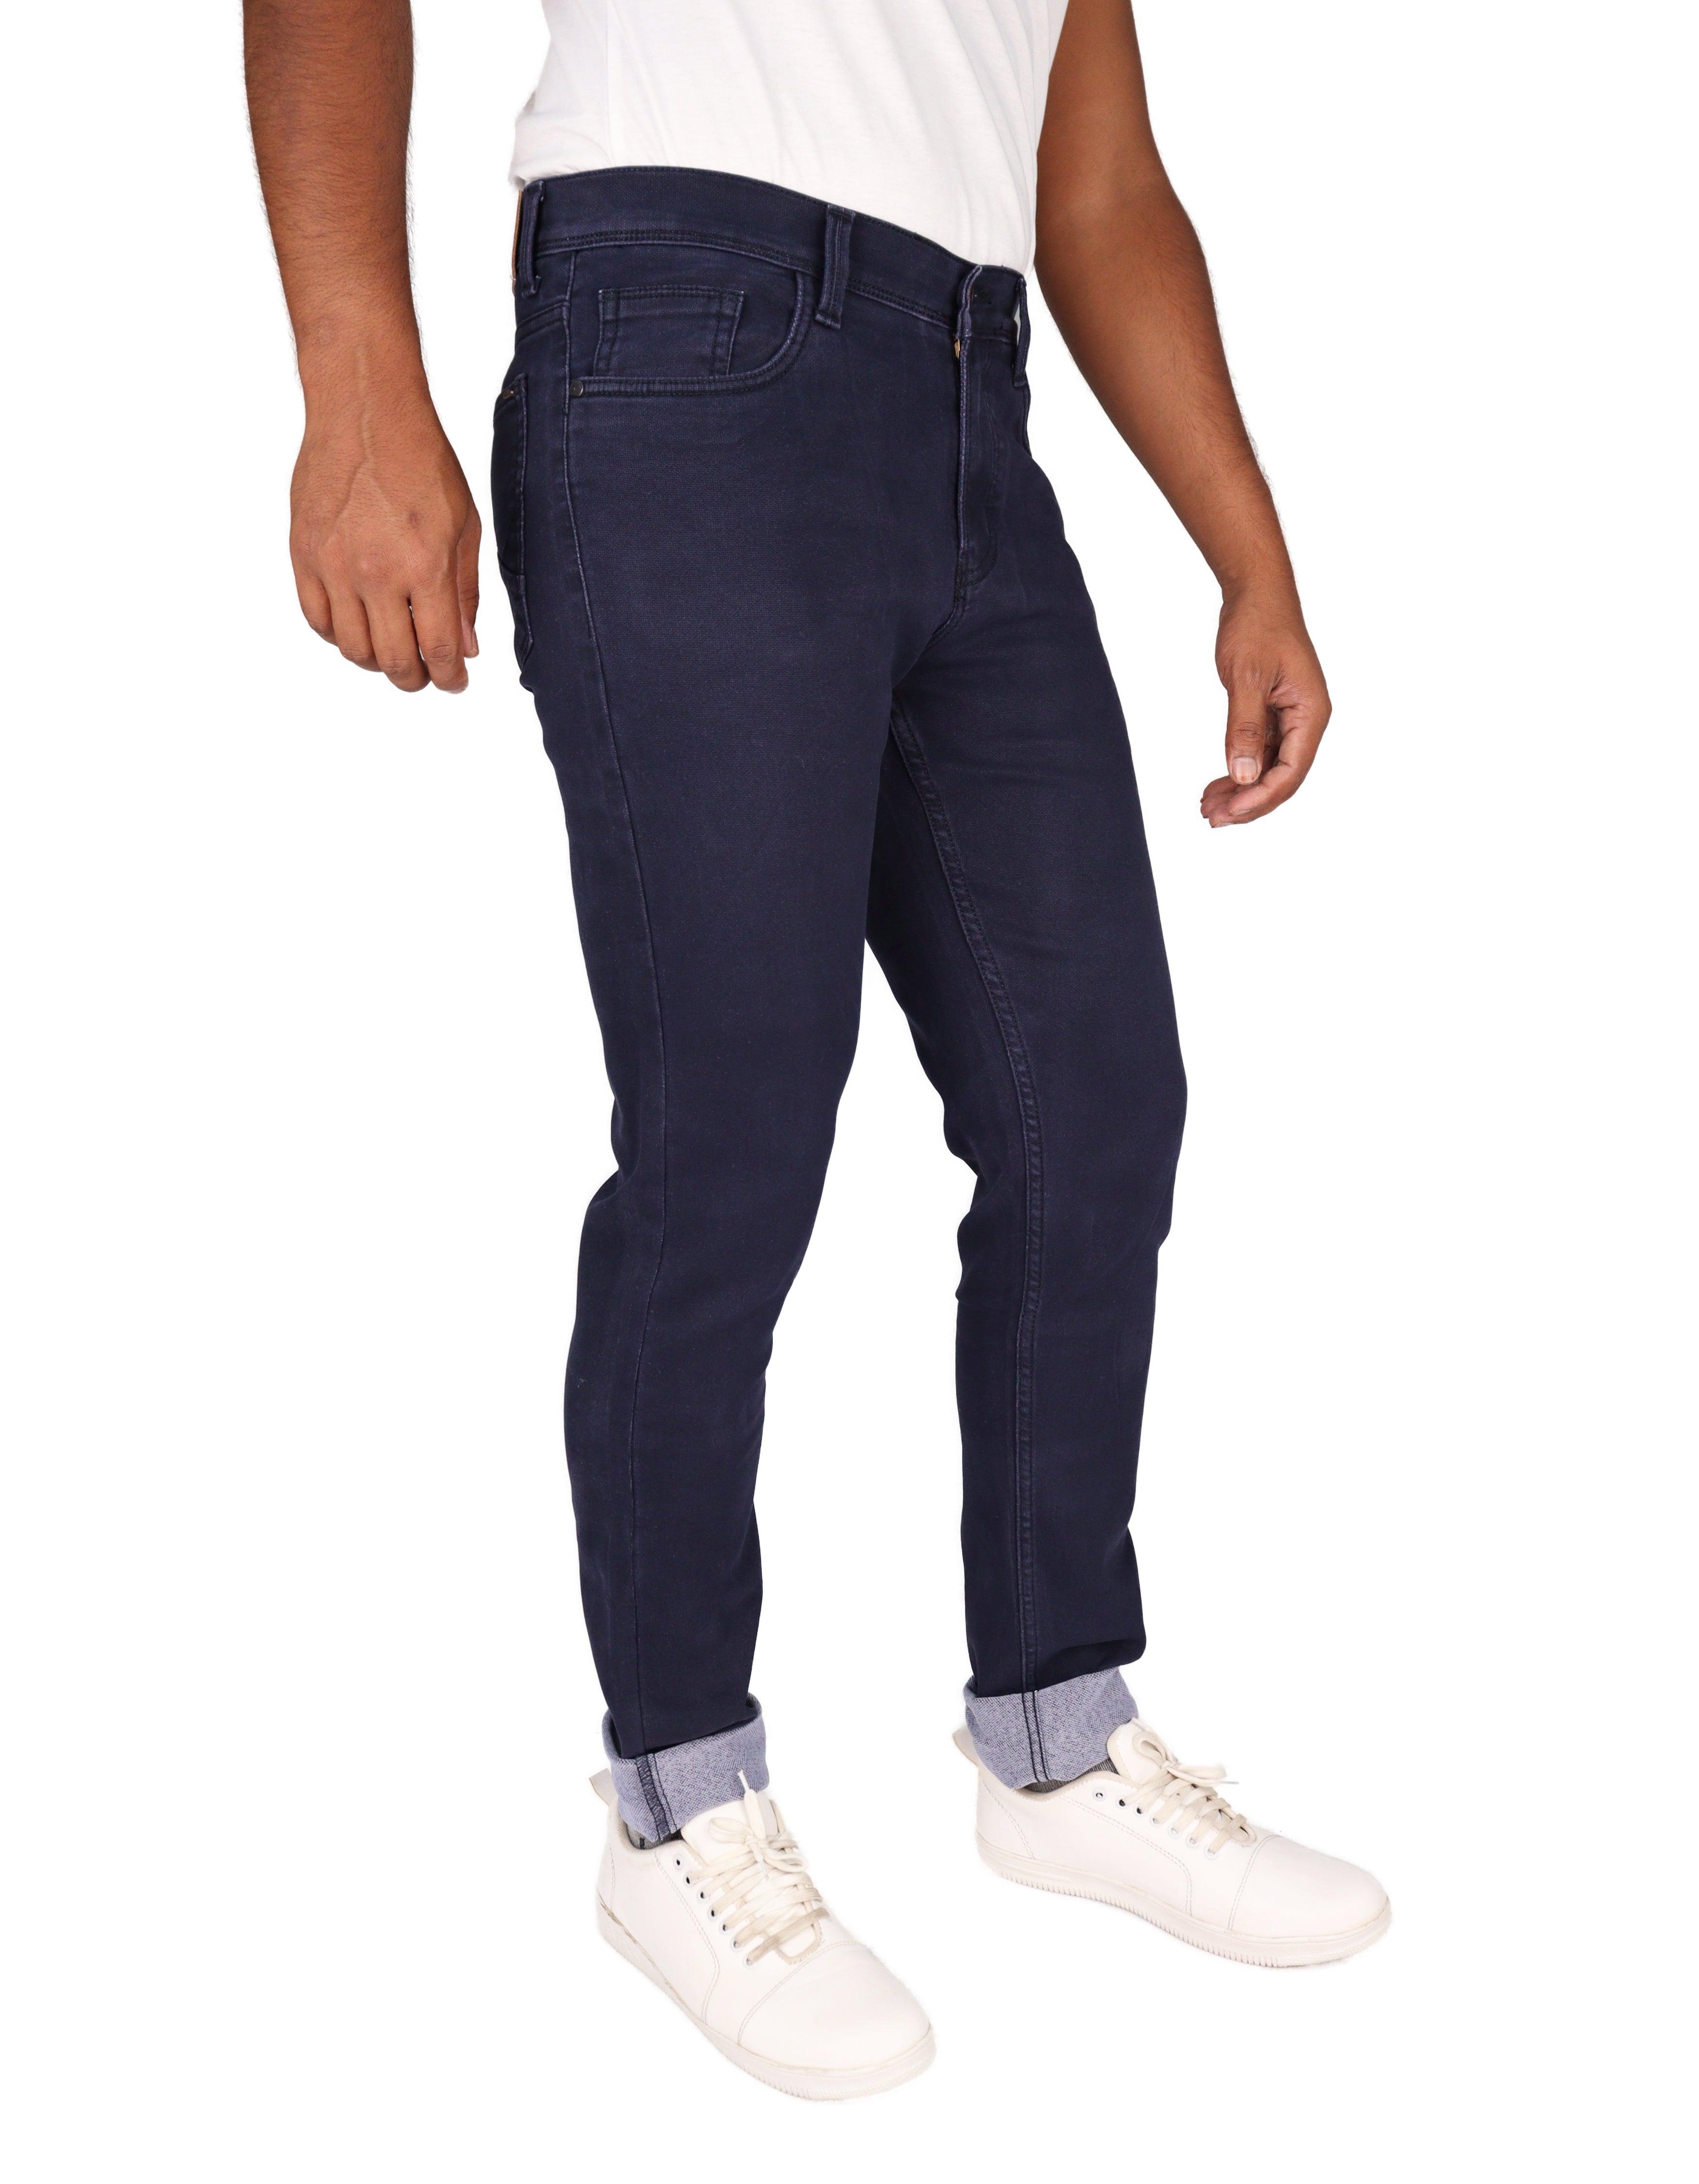 HyperFit - Men's Slim-Fit Trigger Blue Jeans